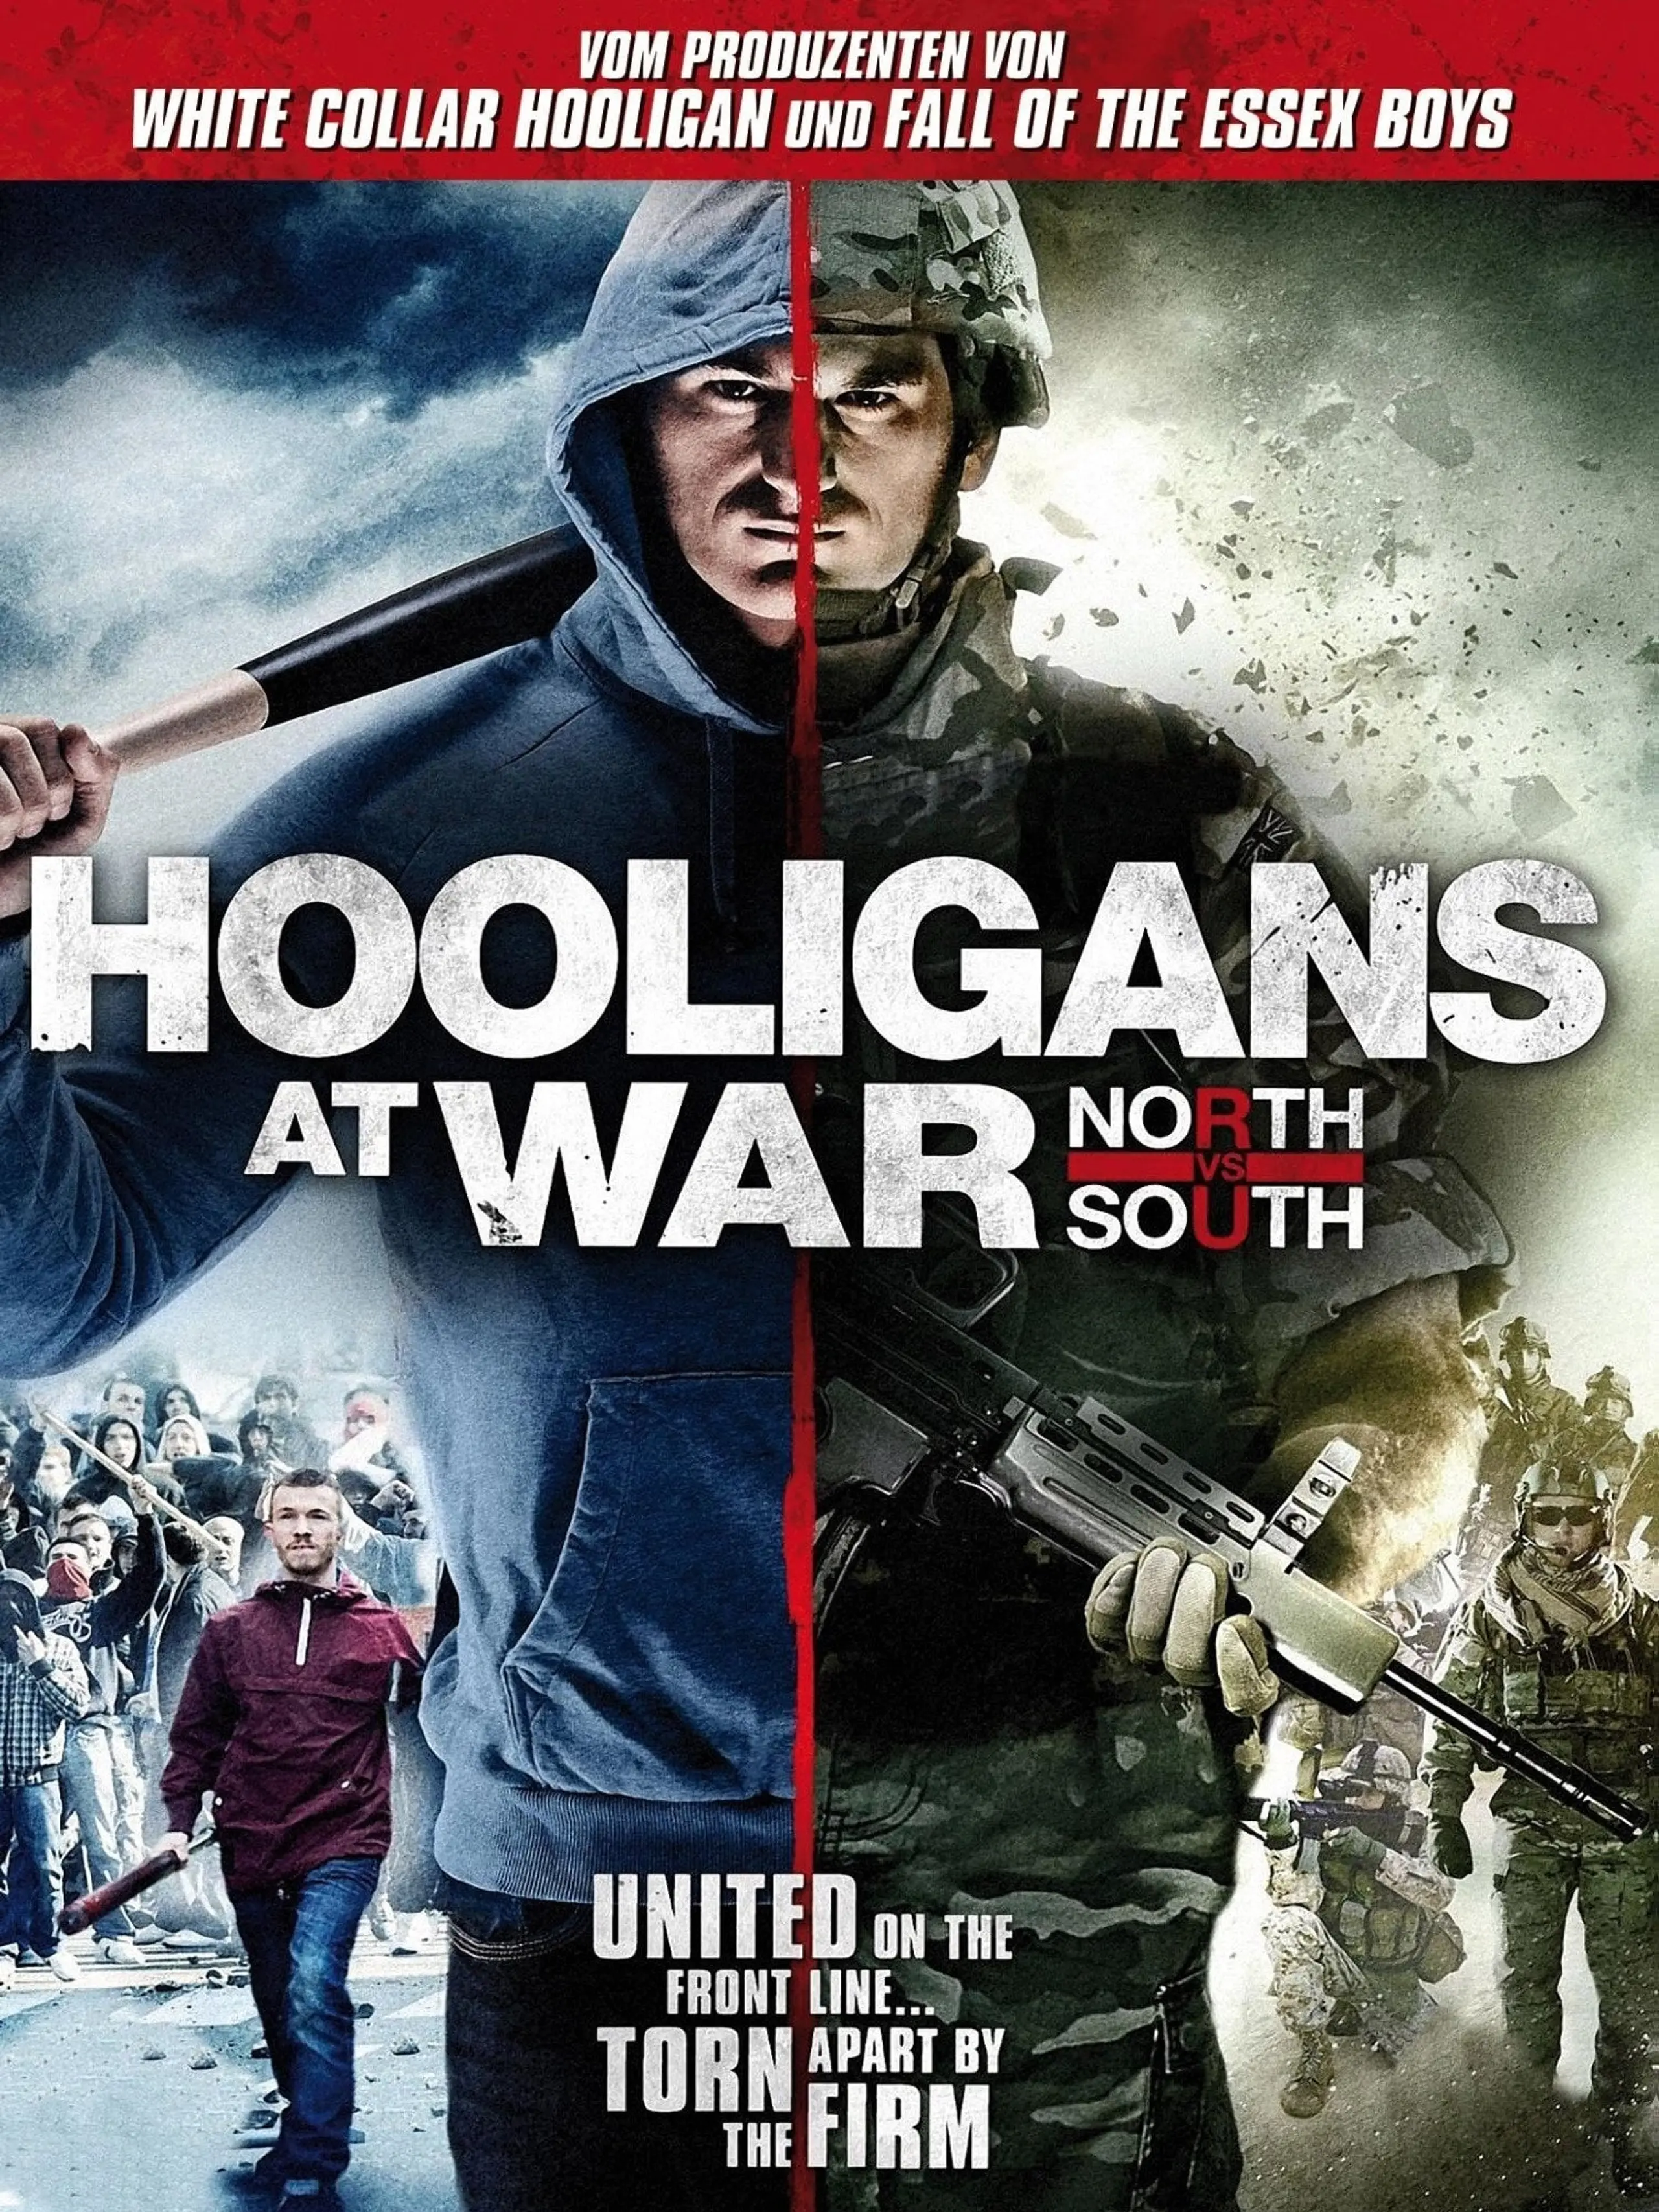 Hooligans at war - North vs. South